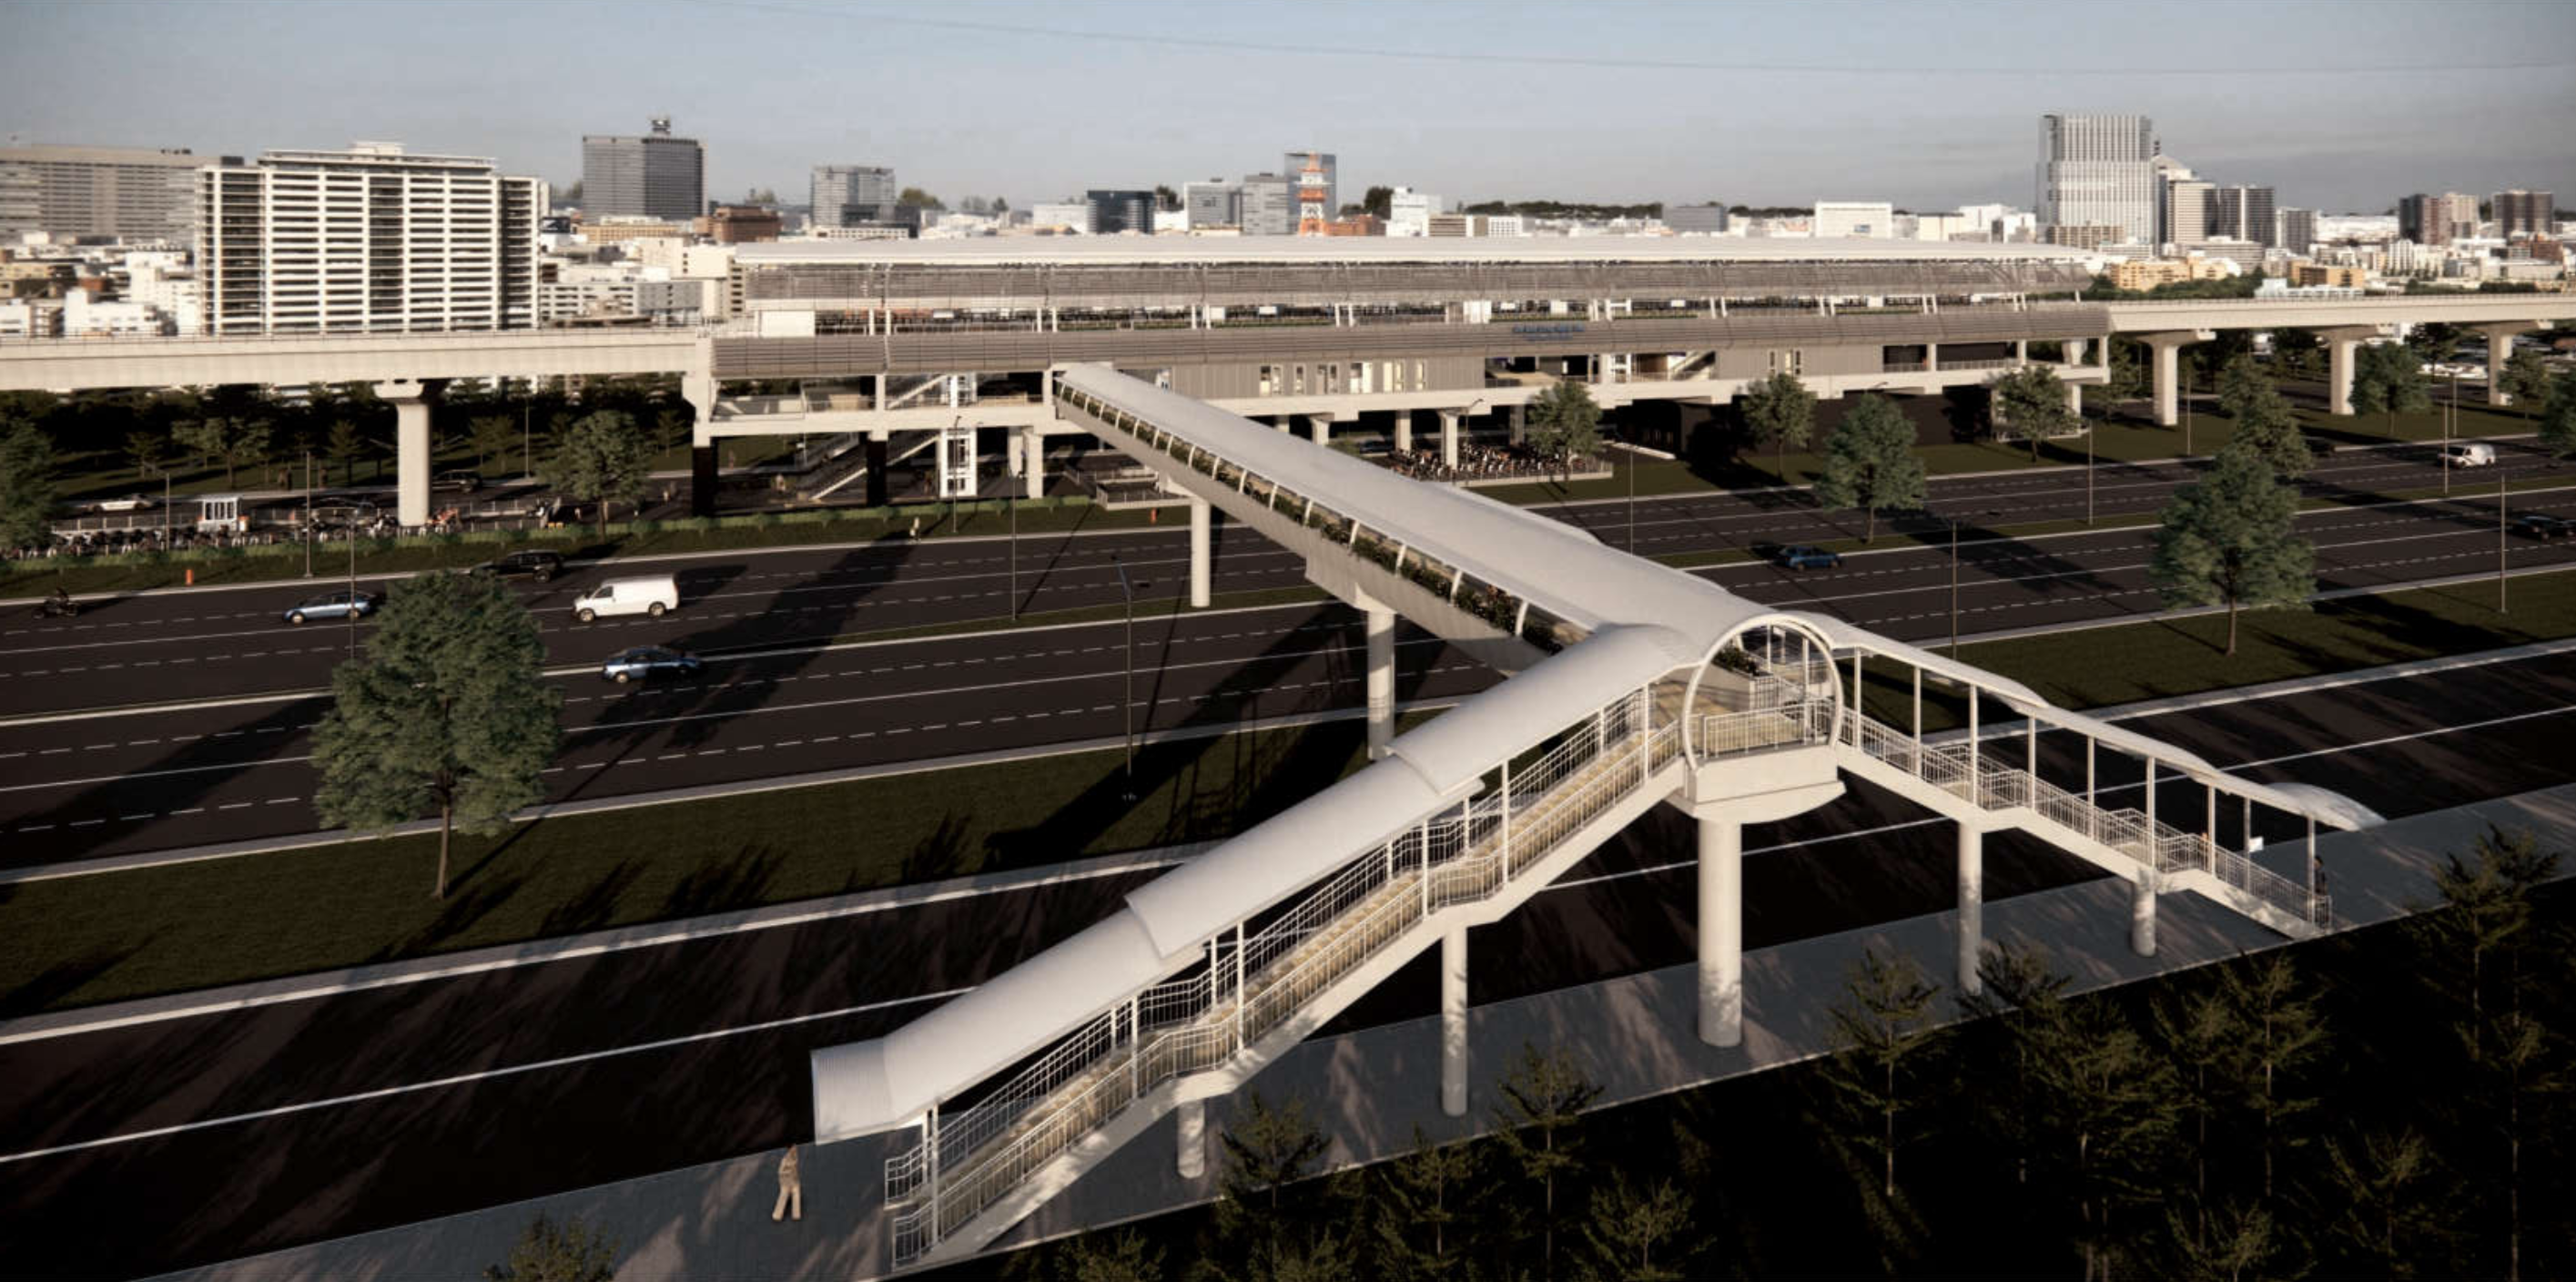 Cầu bộ hành dọc metro Bến Thành - Suối Tiên được chú trọng làm mái che - 1